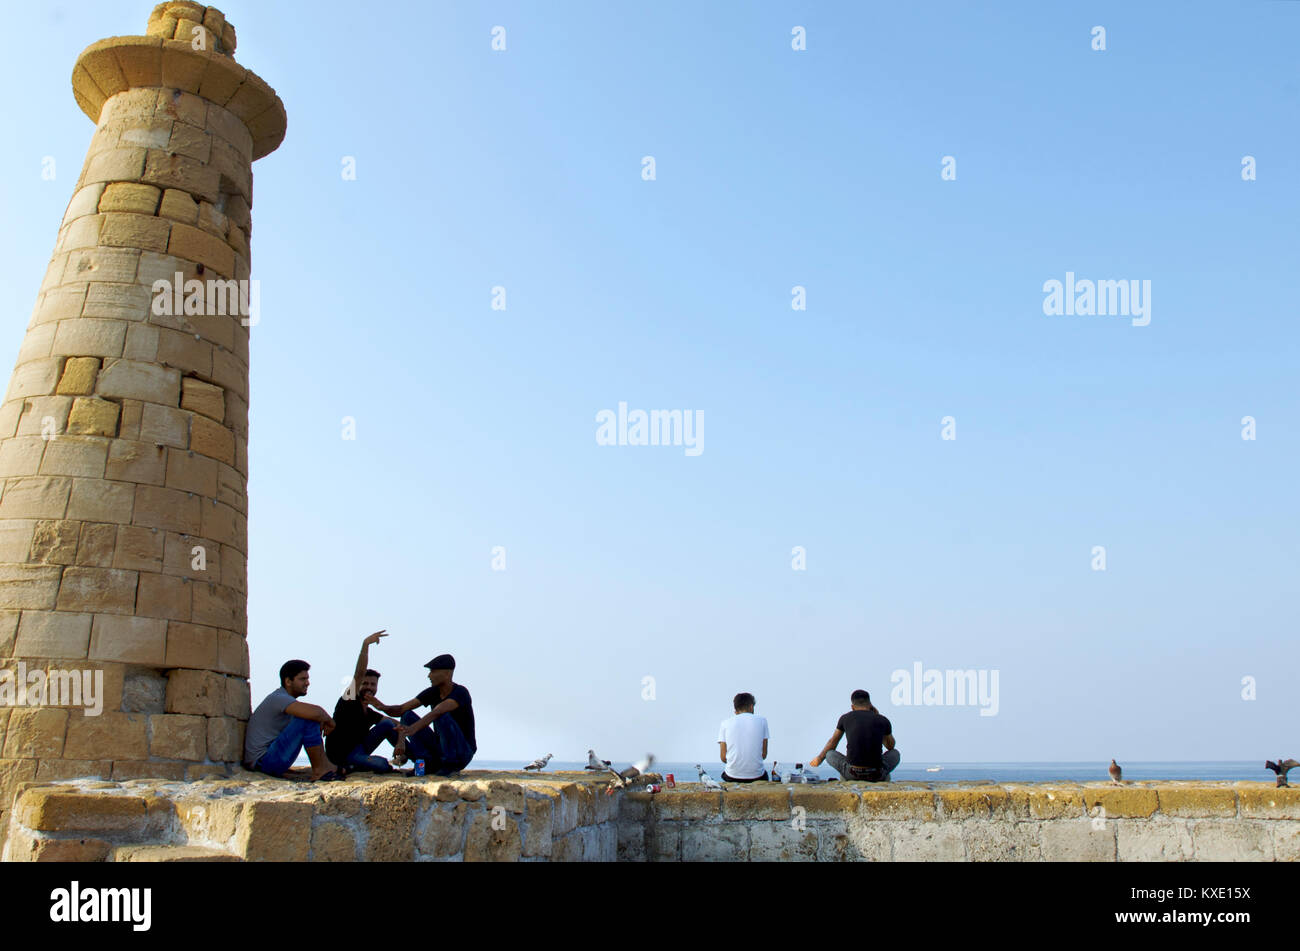 La gente del posto reaxing insieme su una parete accanto a un faro nella zona del porto di Kyrenia, Cipro Foto Stock